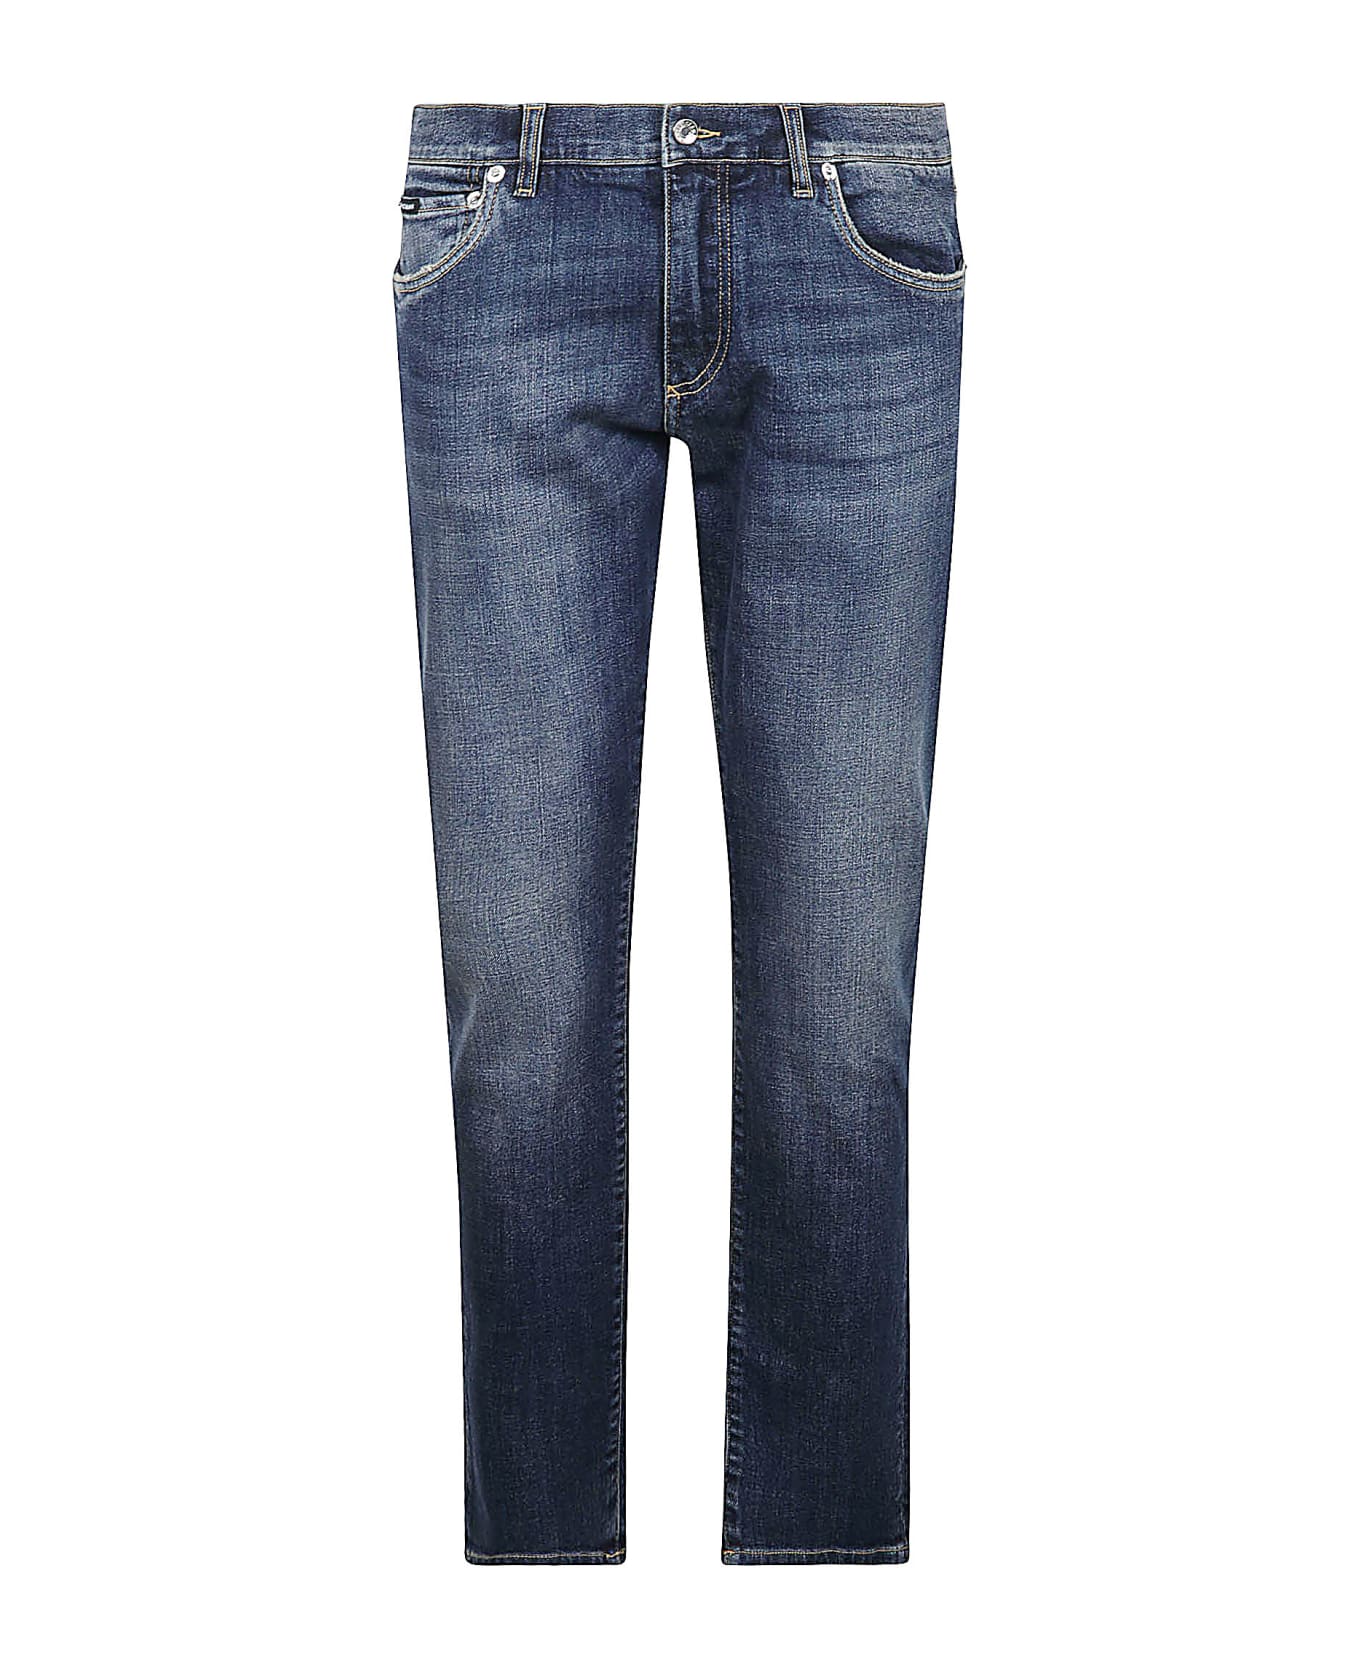 Dolce & Gabbana Classic 5 Pockets Denim Jeans - VAR ABBINATA